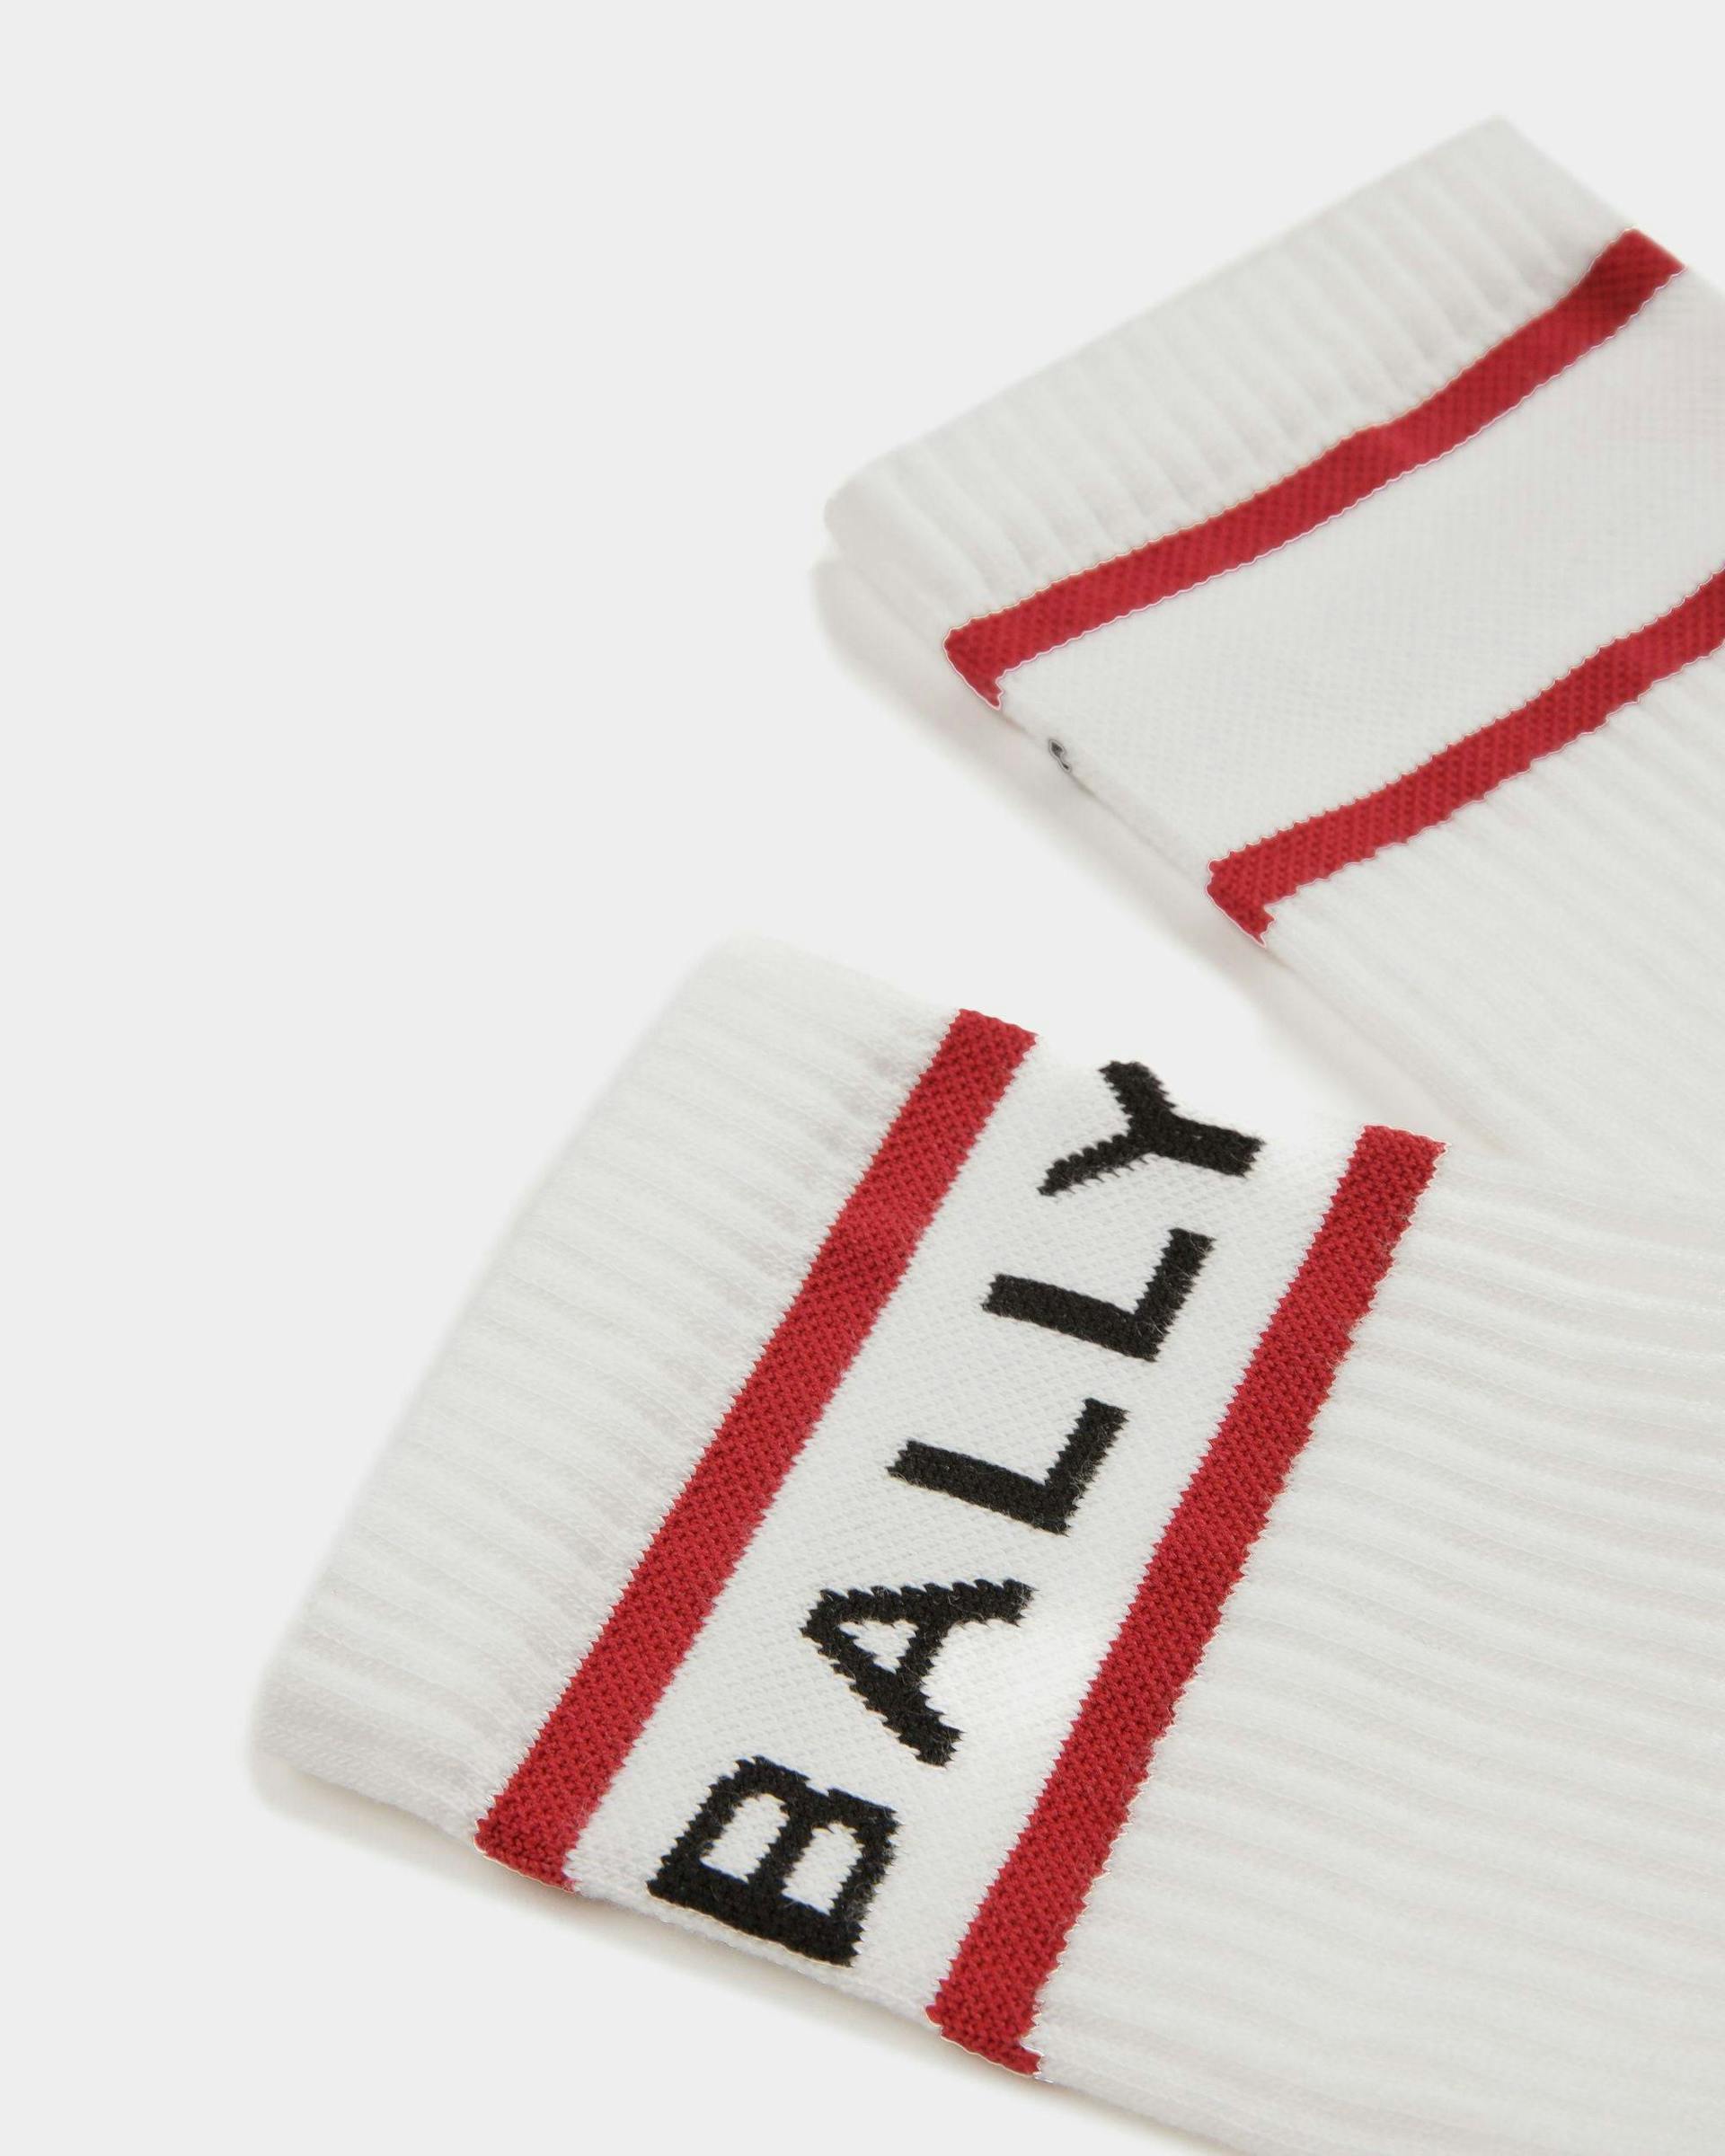 Bally Stripe Socken In Weiß und Tiefrubinrot - Herren - Bally - 02